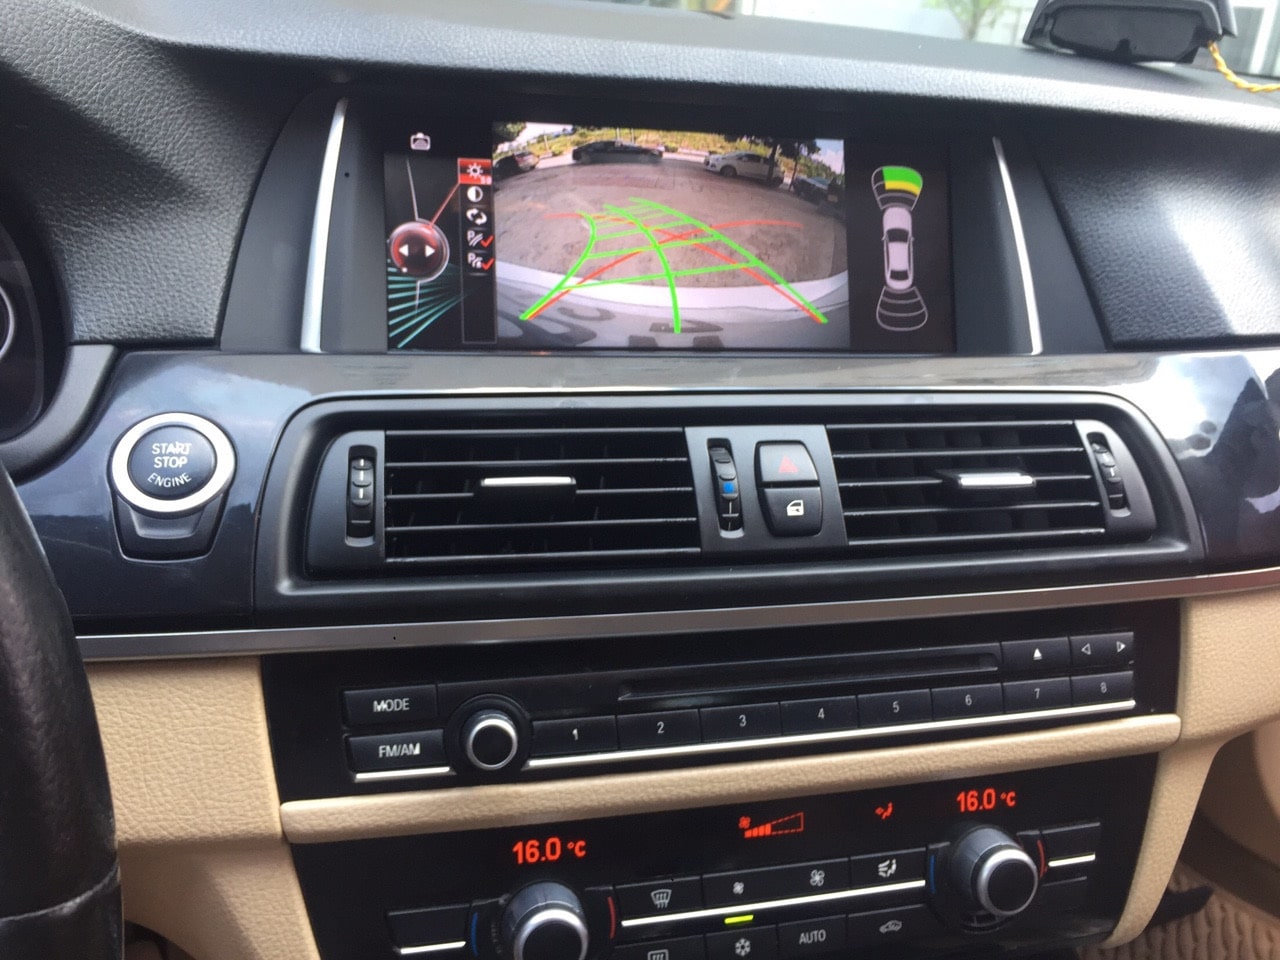 lắp đặt màn hình dvd android chính hãng cho xe bmw 520i tại thành nam gps